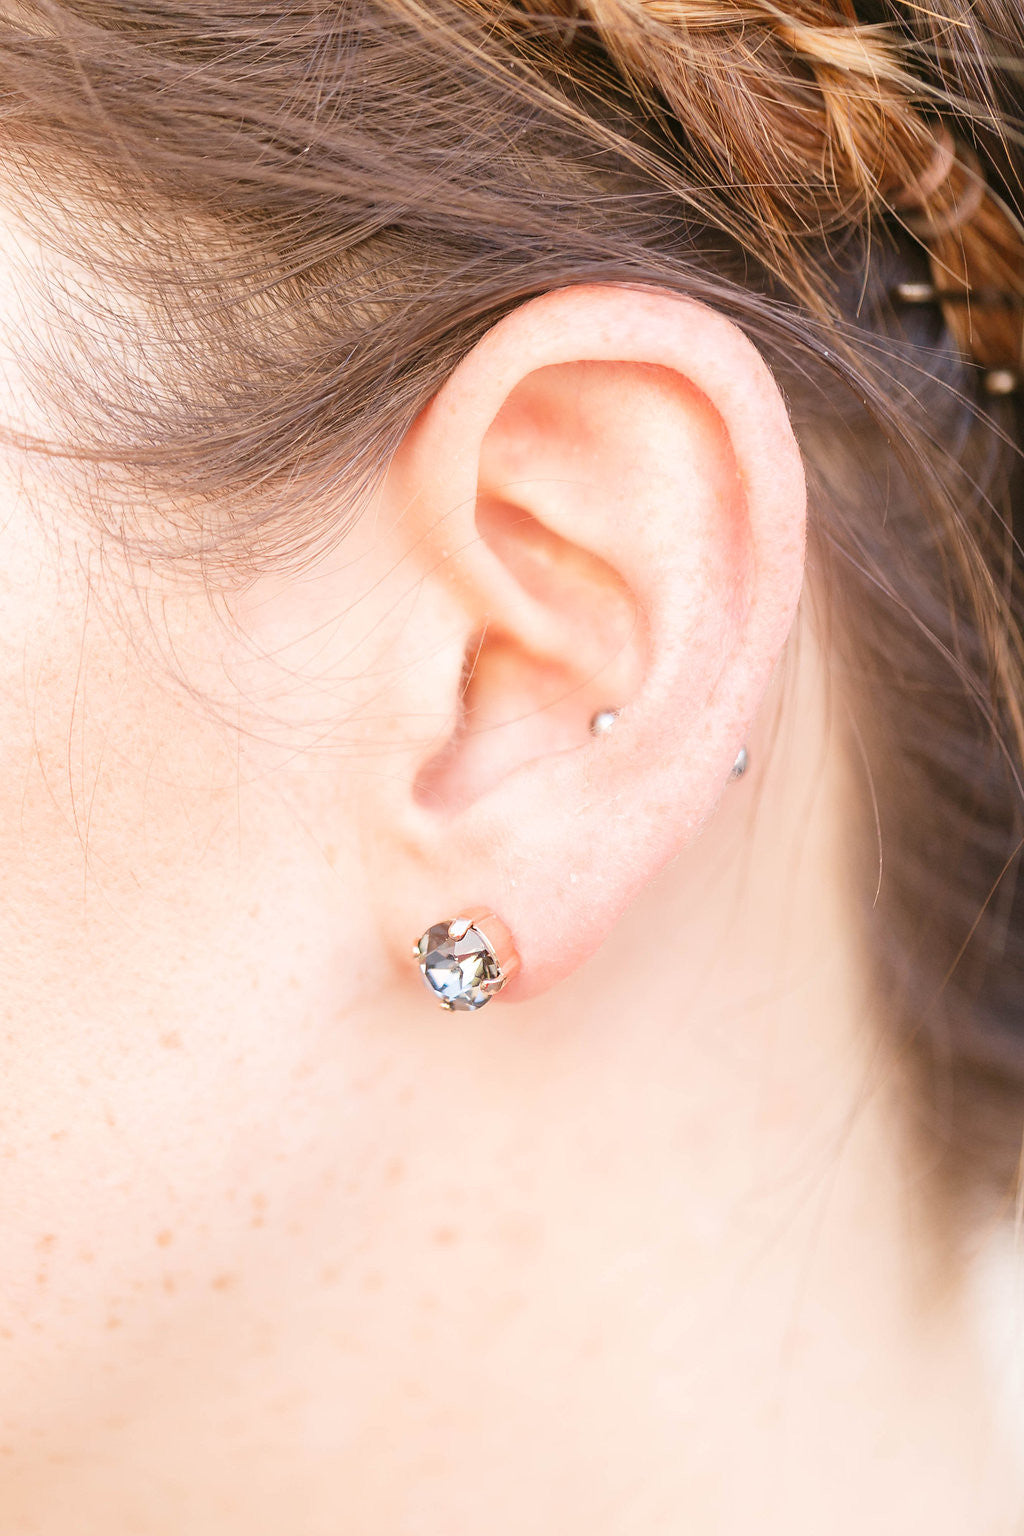 swarovski stud earrings